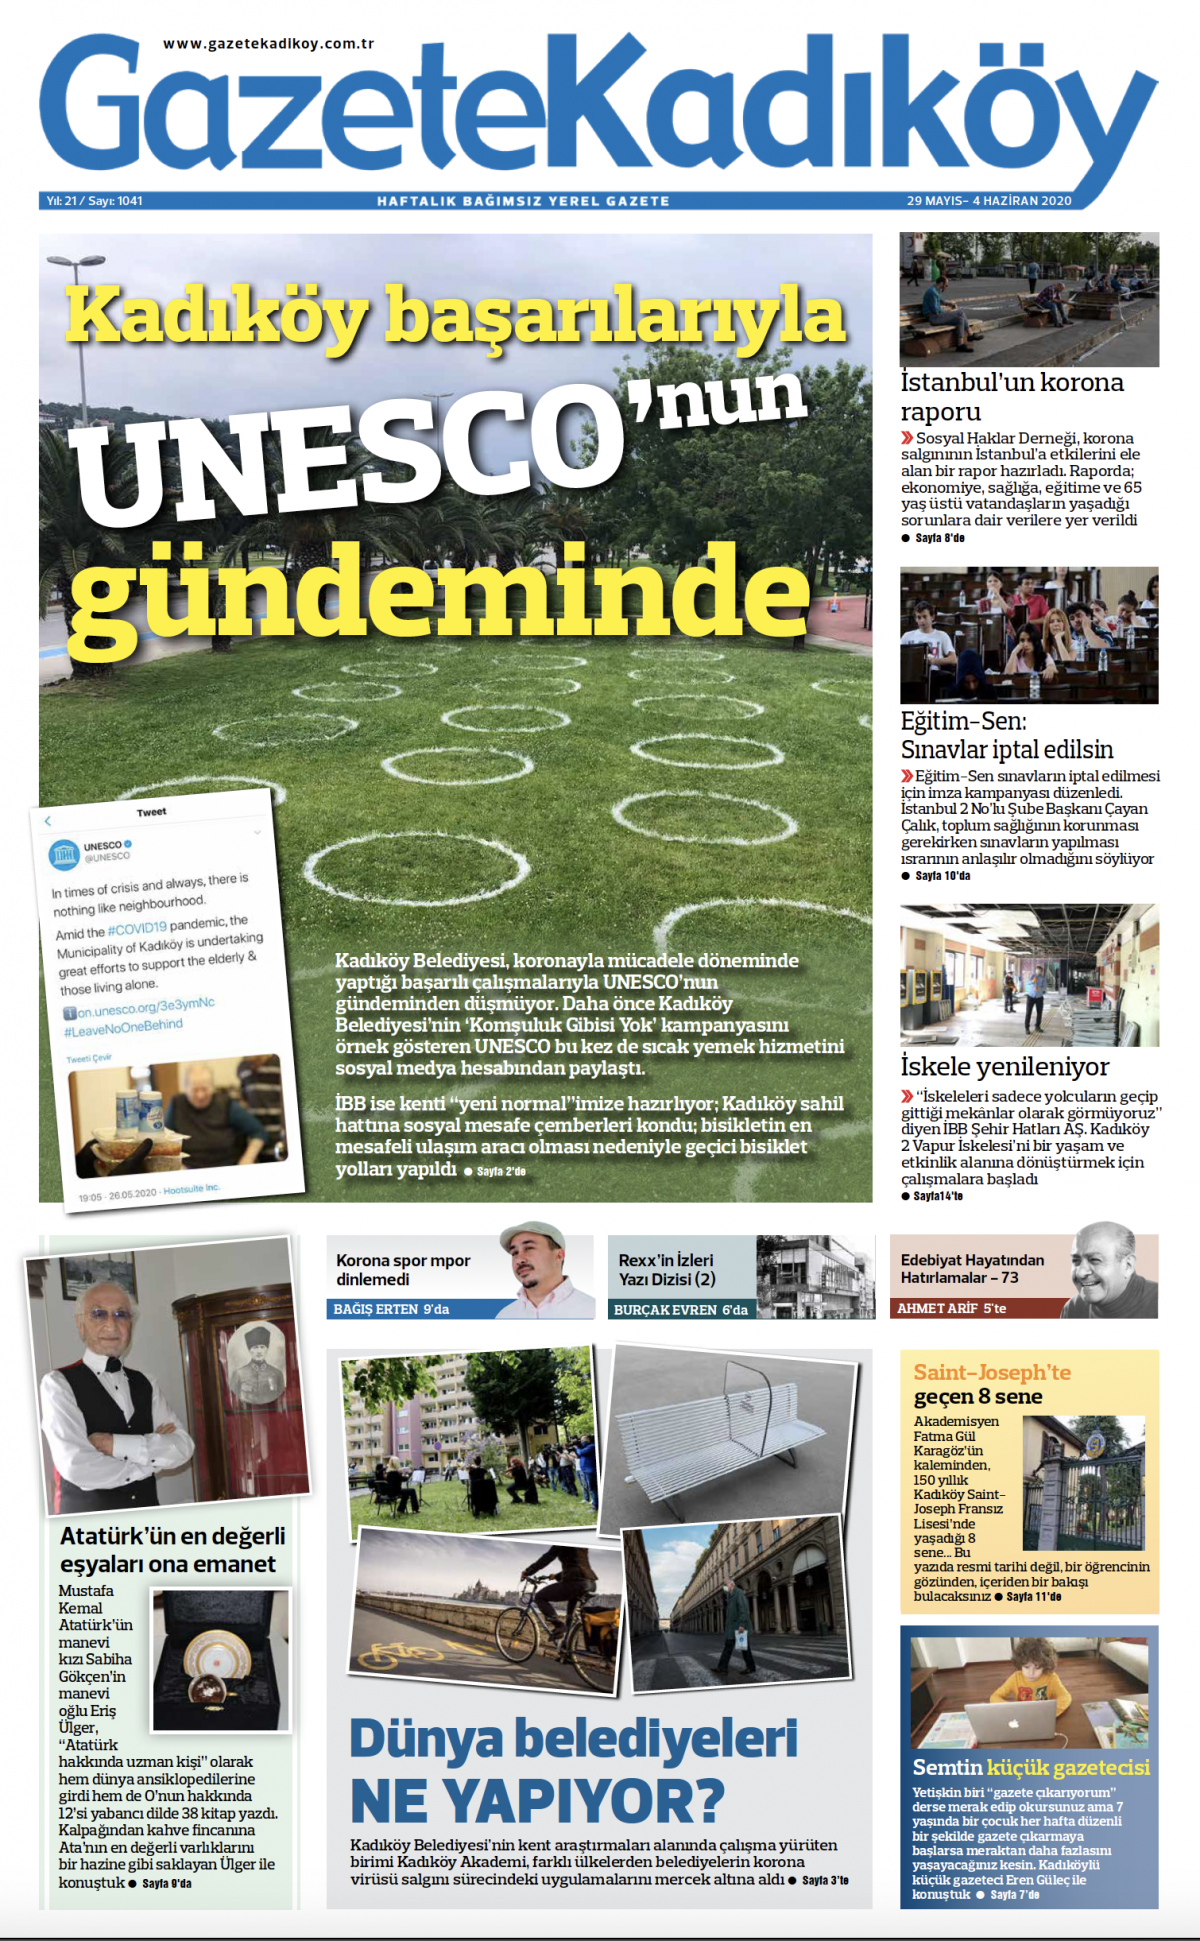 Gazete Kadıköy - 1041. sayı